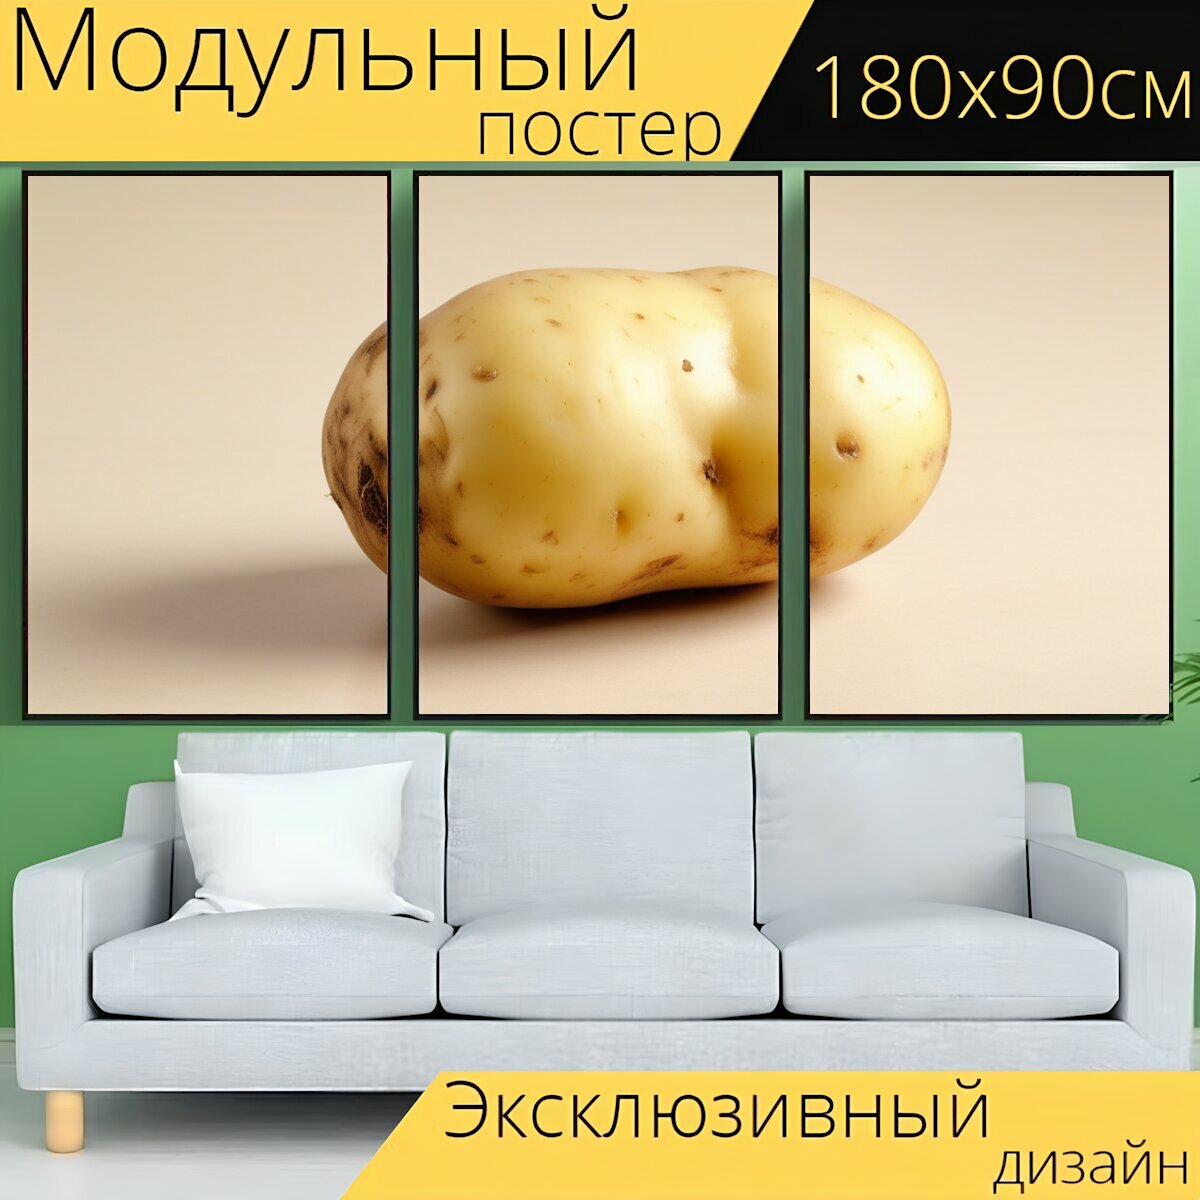 Модульный постер любителям полезного "Овощи, картофель, одна картофелина " 180 x 90 см. для интерьера на стену